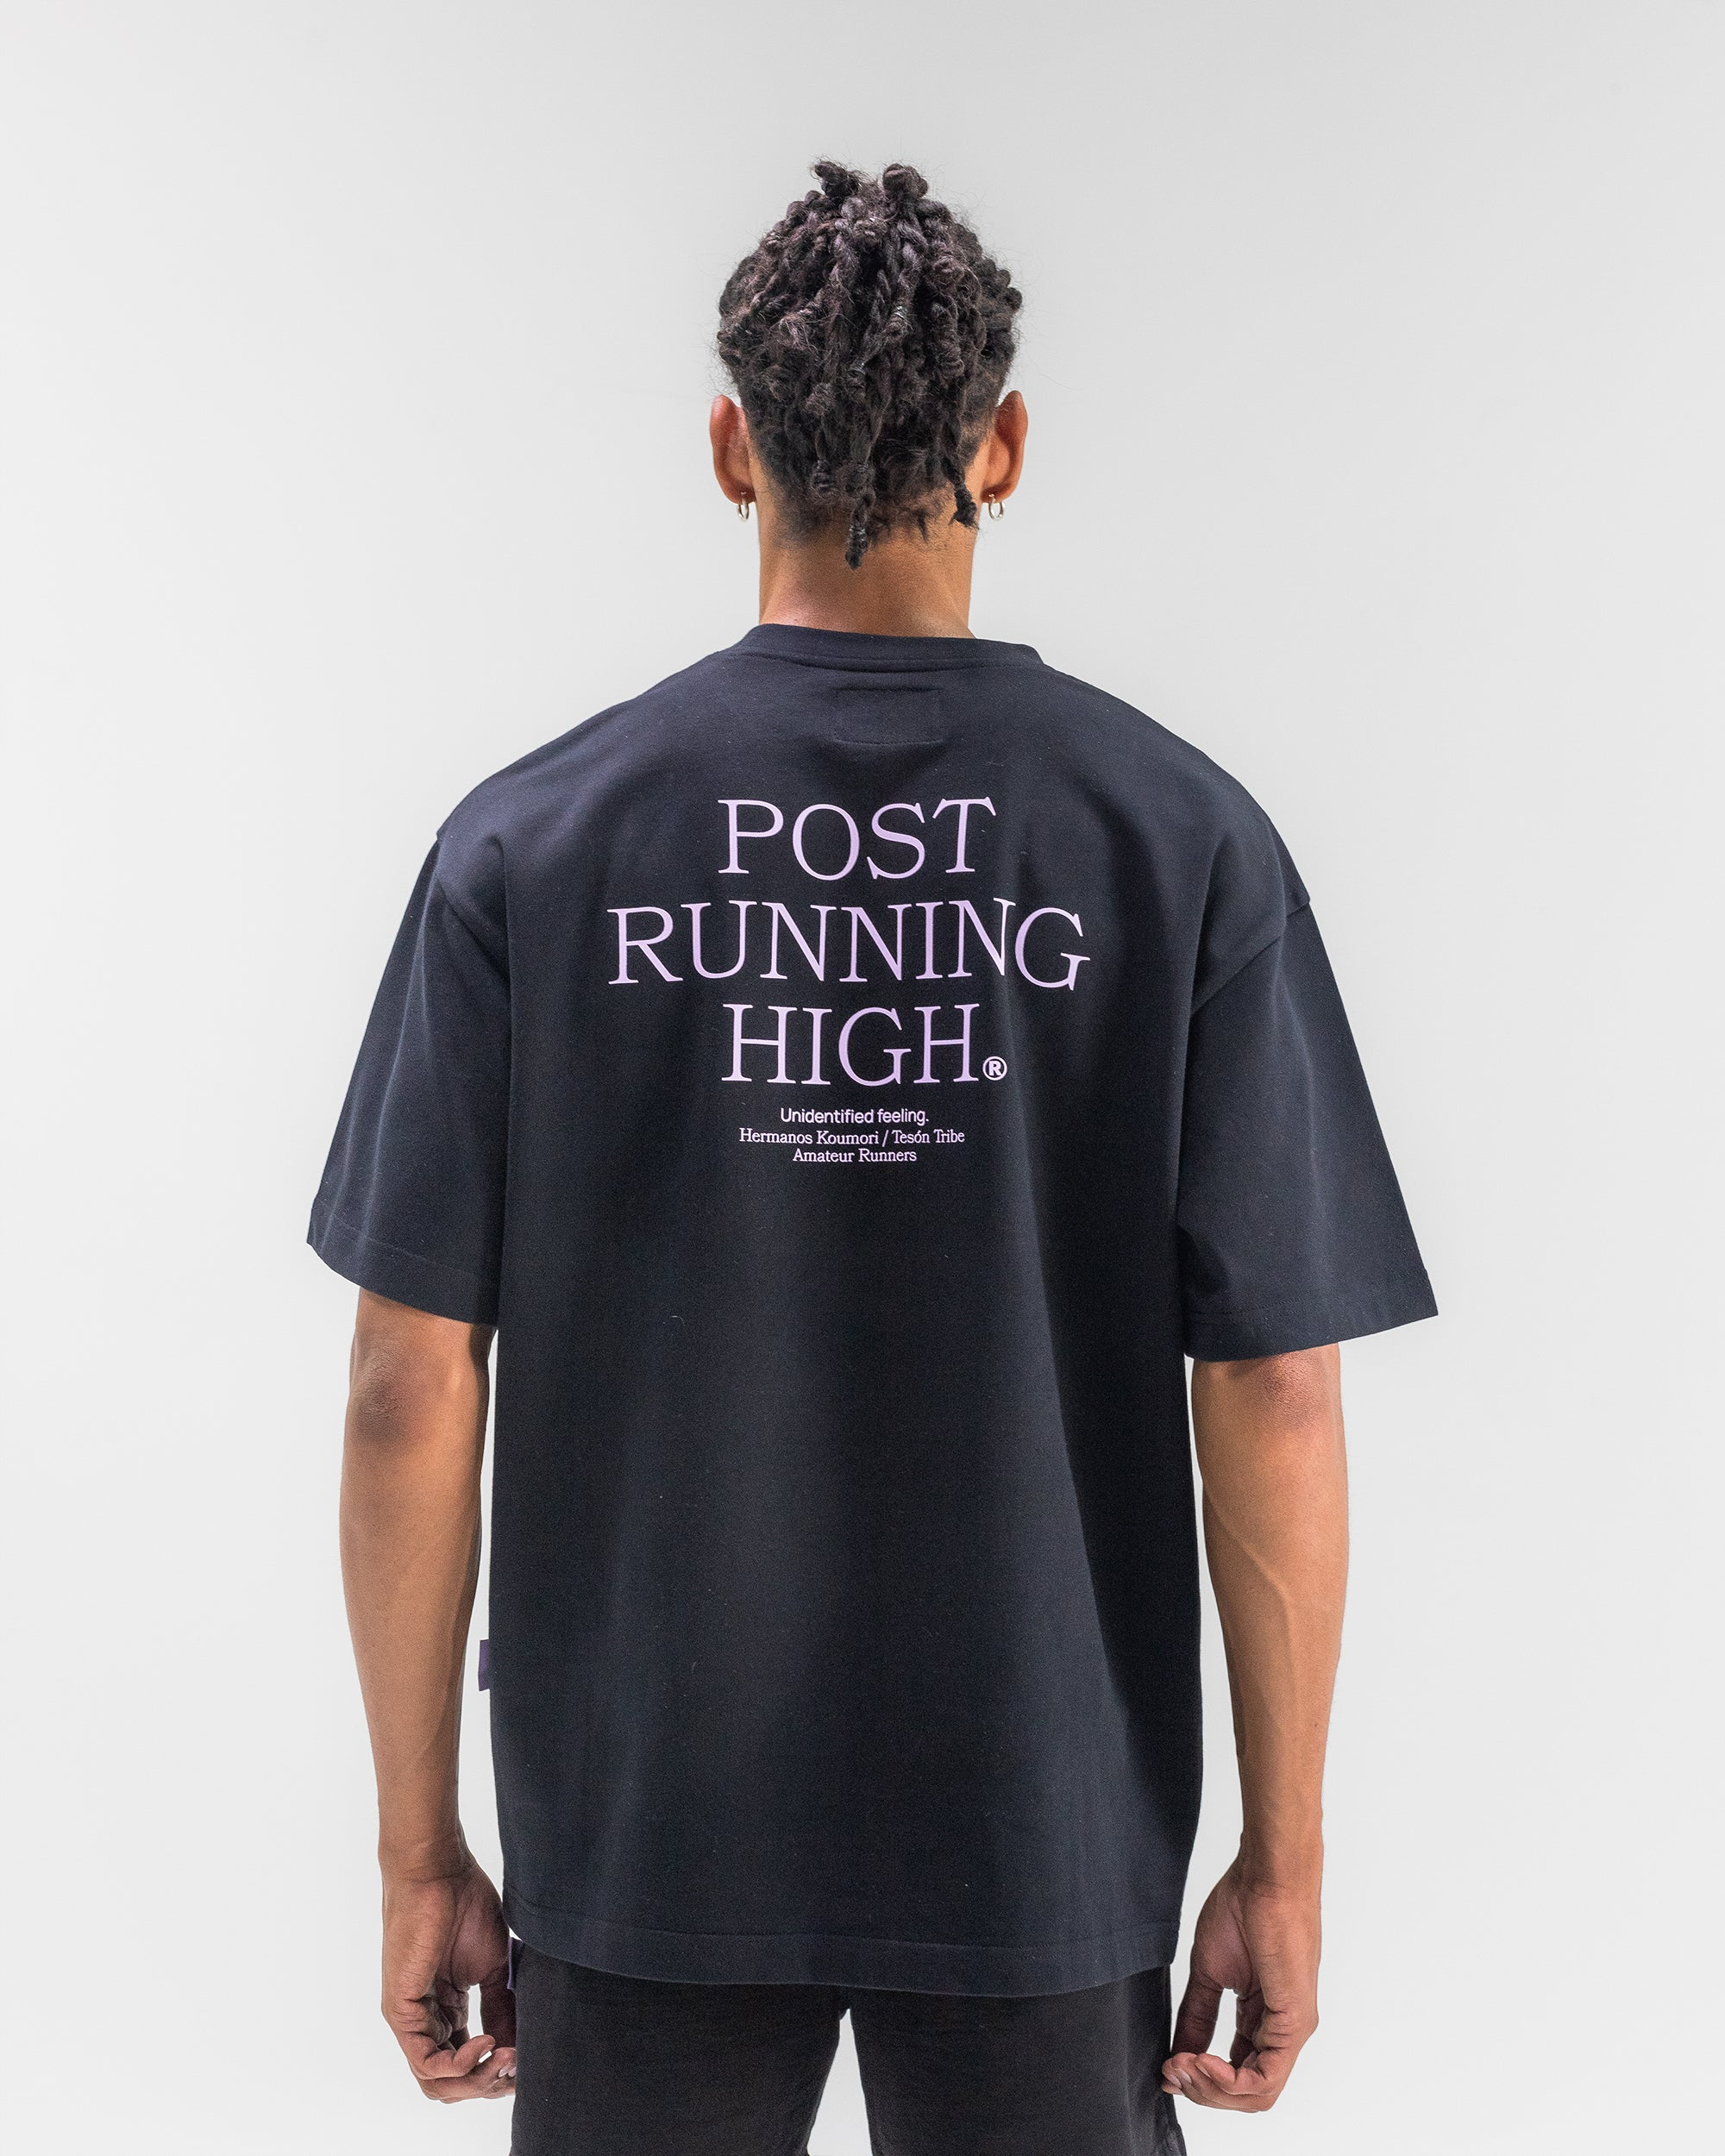 Post Running High T-Shirt - Unisex